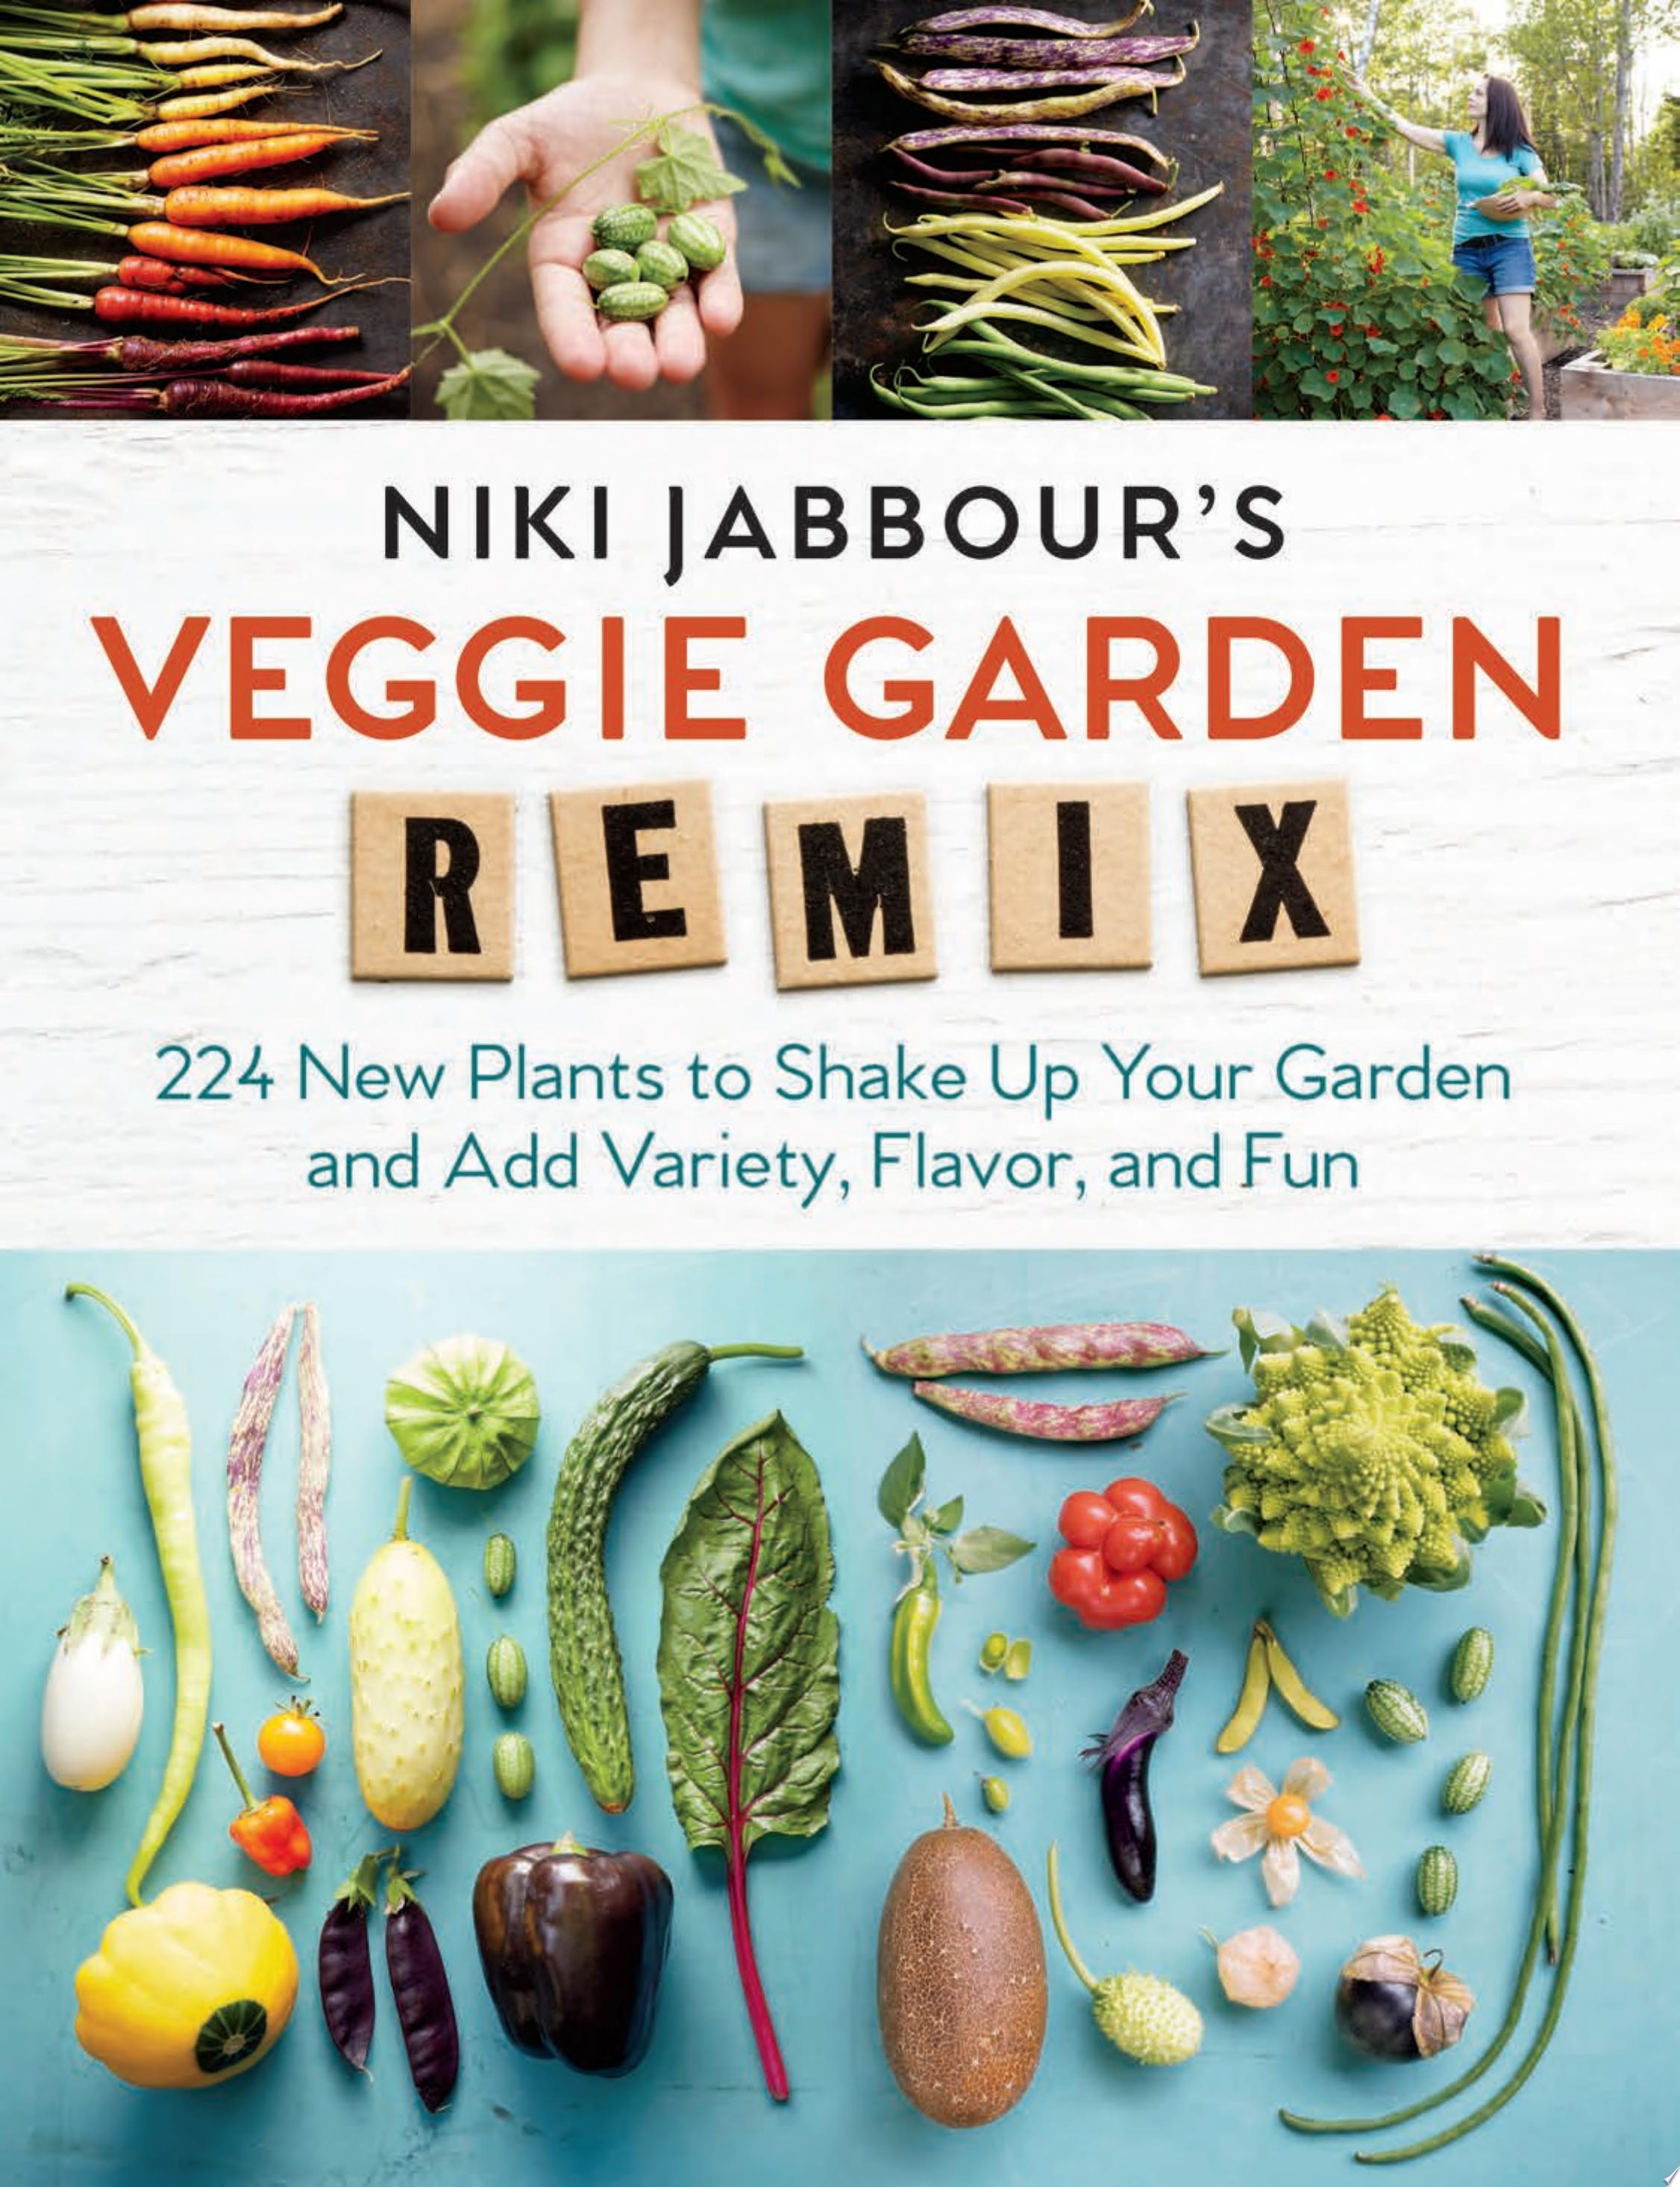 Image for "Niki Jabbour&#039;s Veggie Garden Remix"